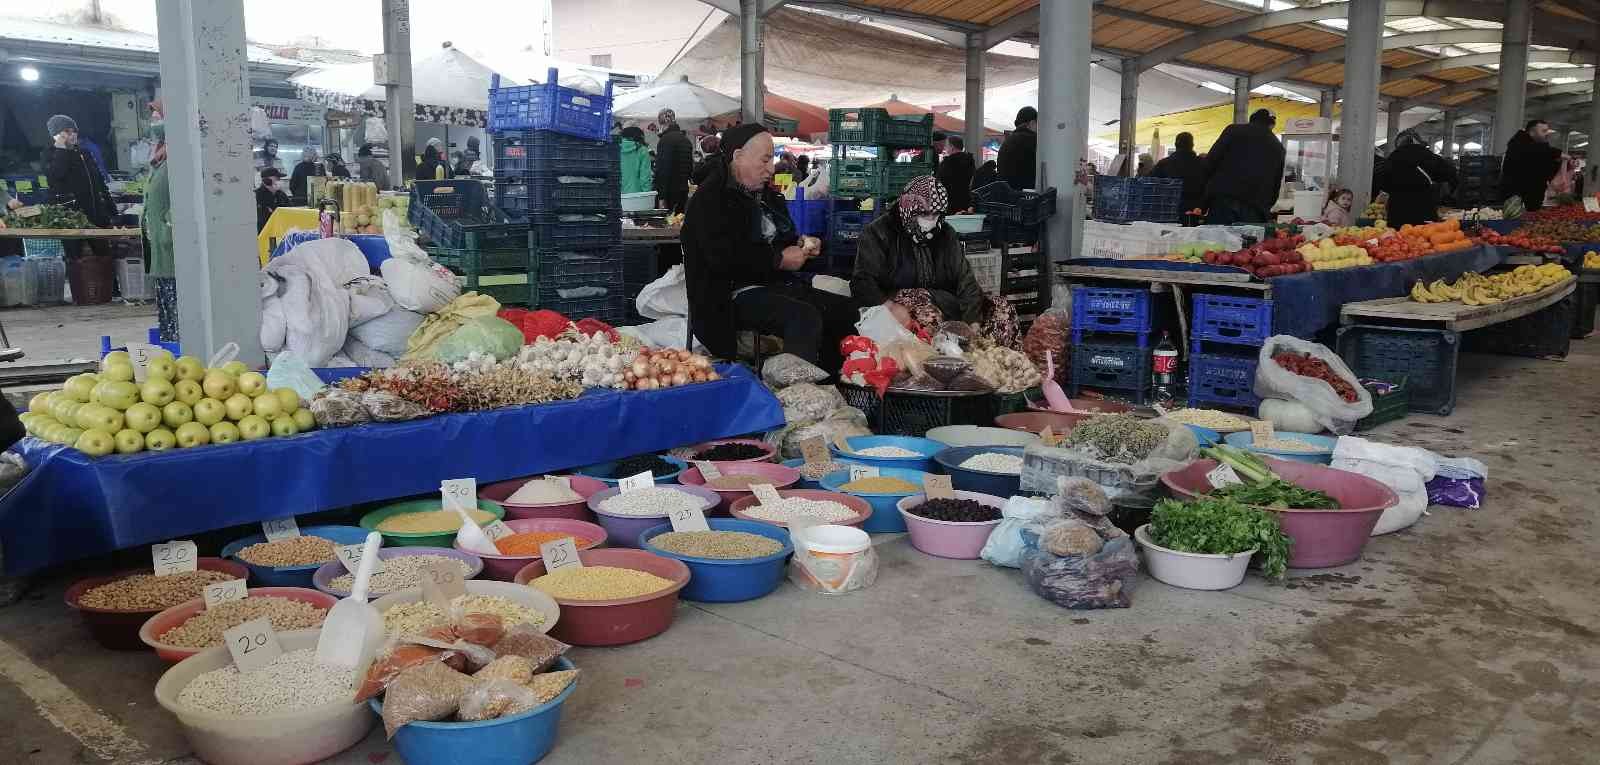 Balıkesir’in Sındırgı ilçesinde cumartesi günleri kurulan doğal pazar üreticisinden tüketiciye ürünlerin buluşmasına imkan sağlıyor. Bölgenin en ...